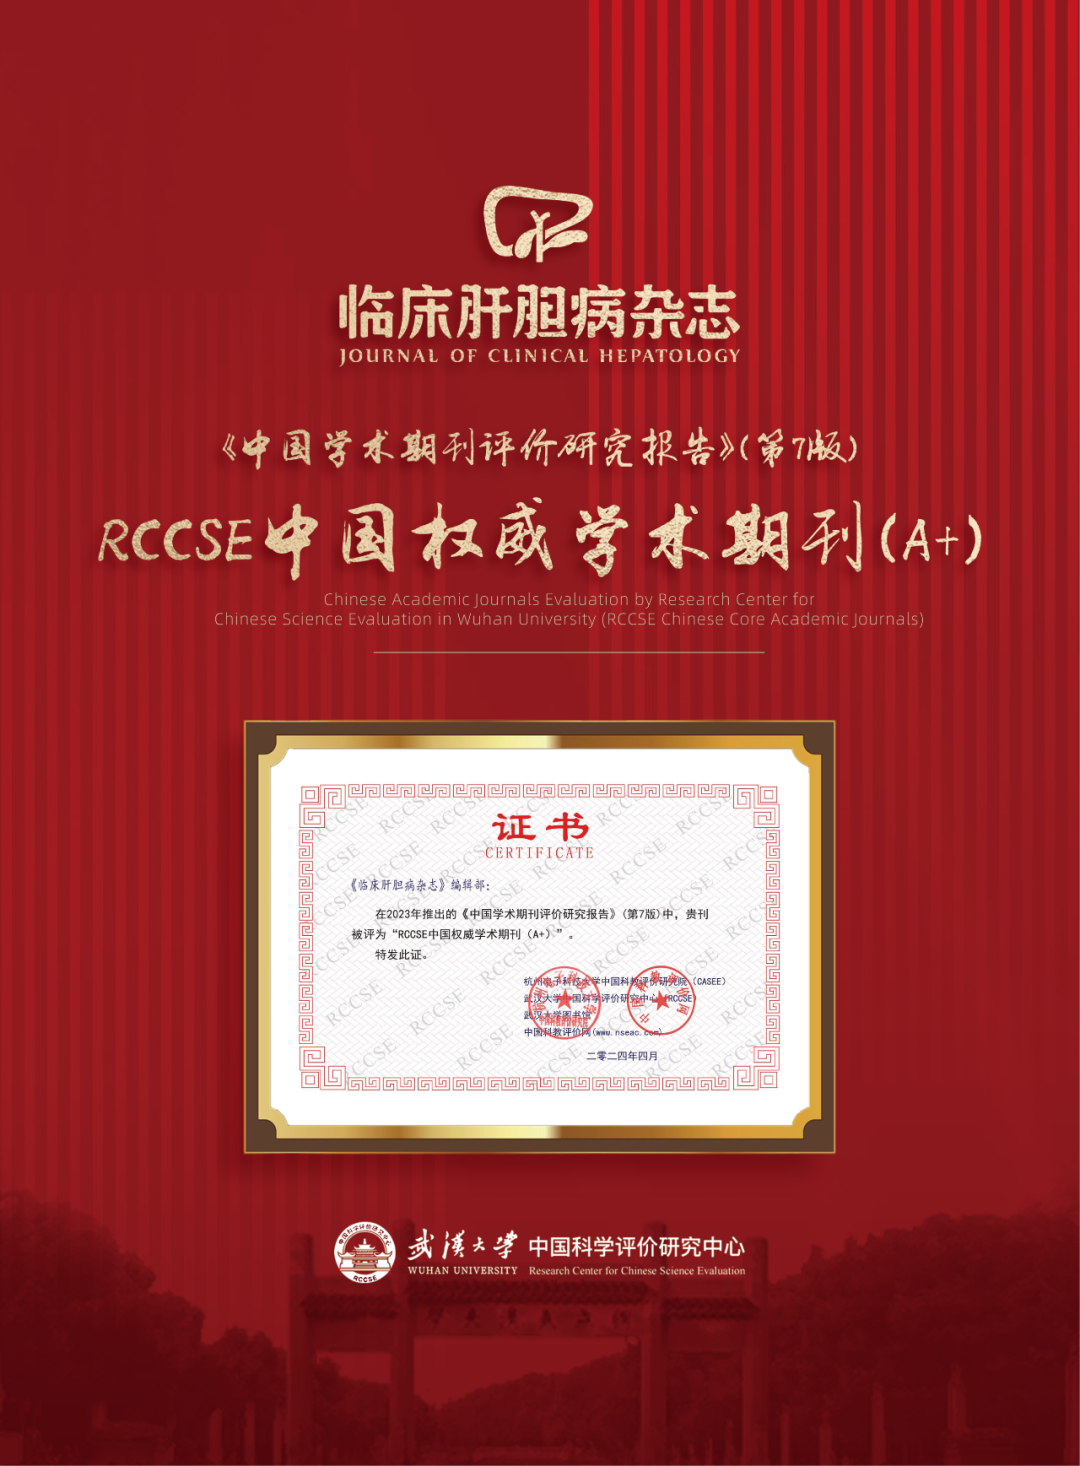 《临床肝胆病杂志》获评“RCCSE<font color="red">中国</font>权威<font color="red">学术期刊</font>（A+）”